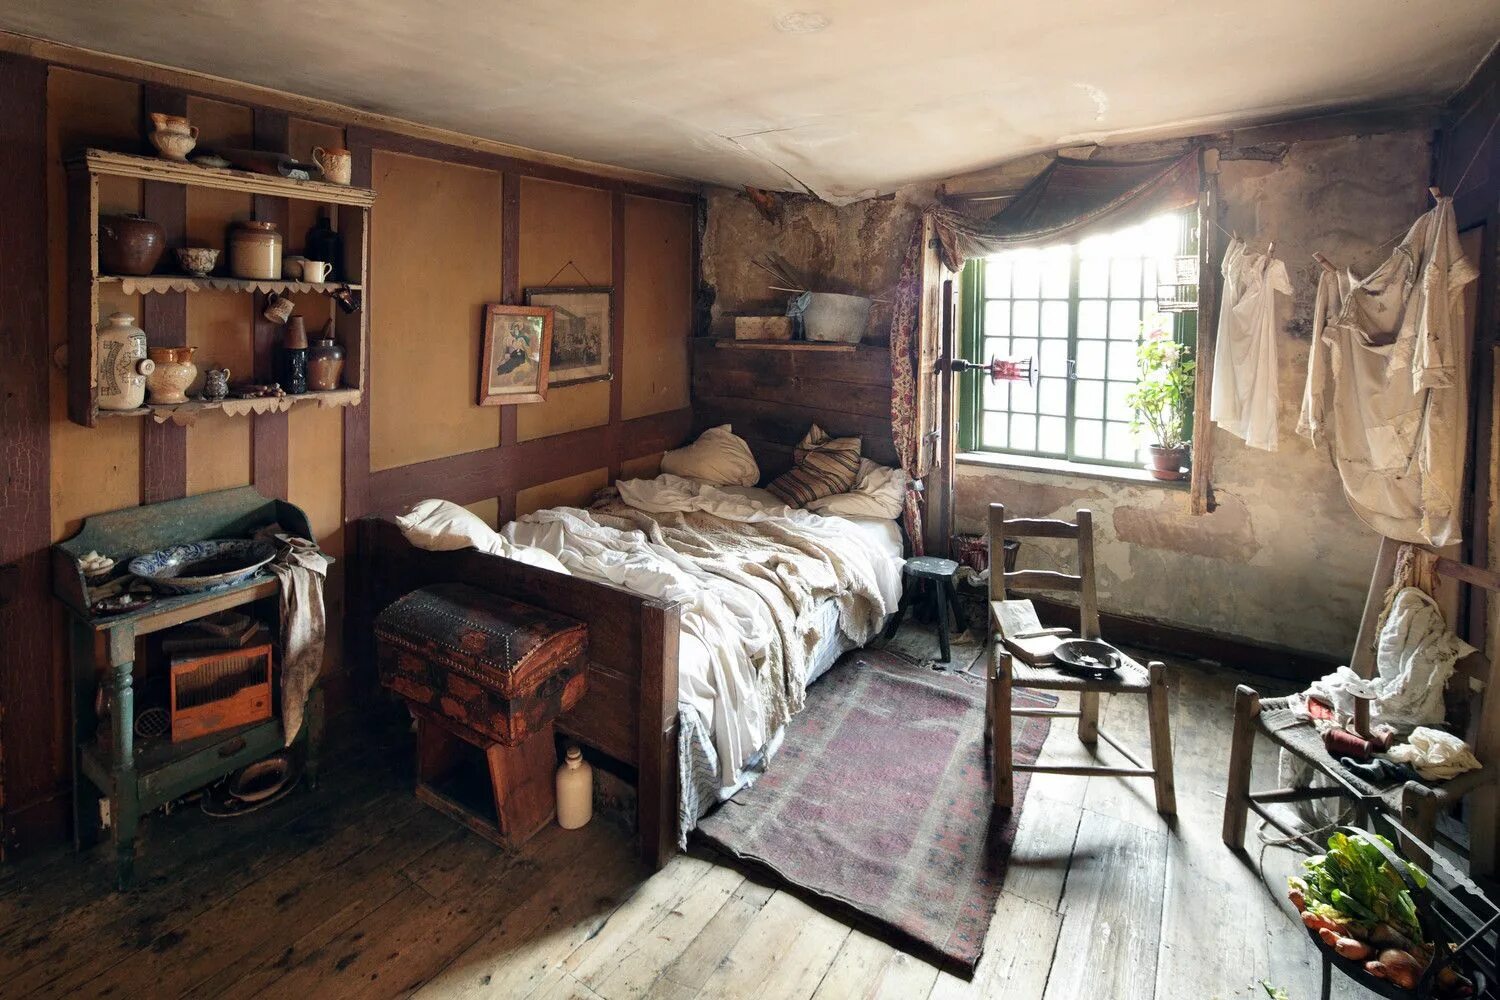 Спальня в бедном жилище 19 века в Англии. Жилища бедняков Лондон 19в. Бедный дом внутри. Бедная комната. Old bedroom